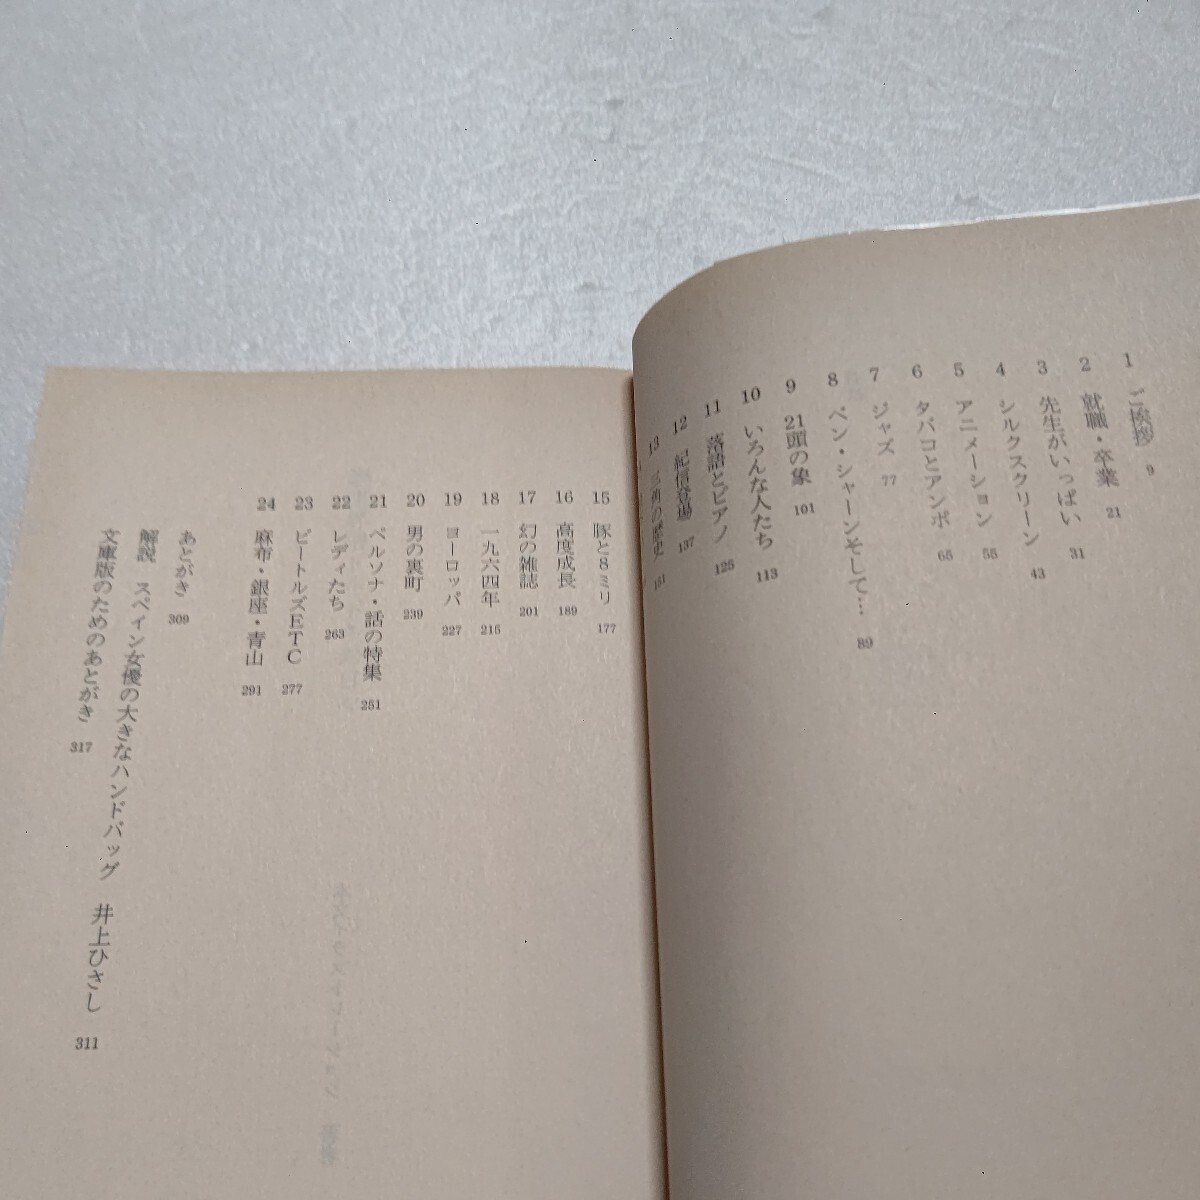 銀座界隈ドキドキの日々 和田誠 銀座が街の王様で僕はデザイナー一年生だった―修業時代を文章と懐かしいデザインで綴った六〇年代エッセイ